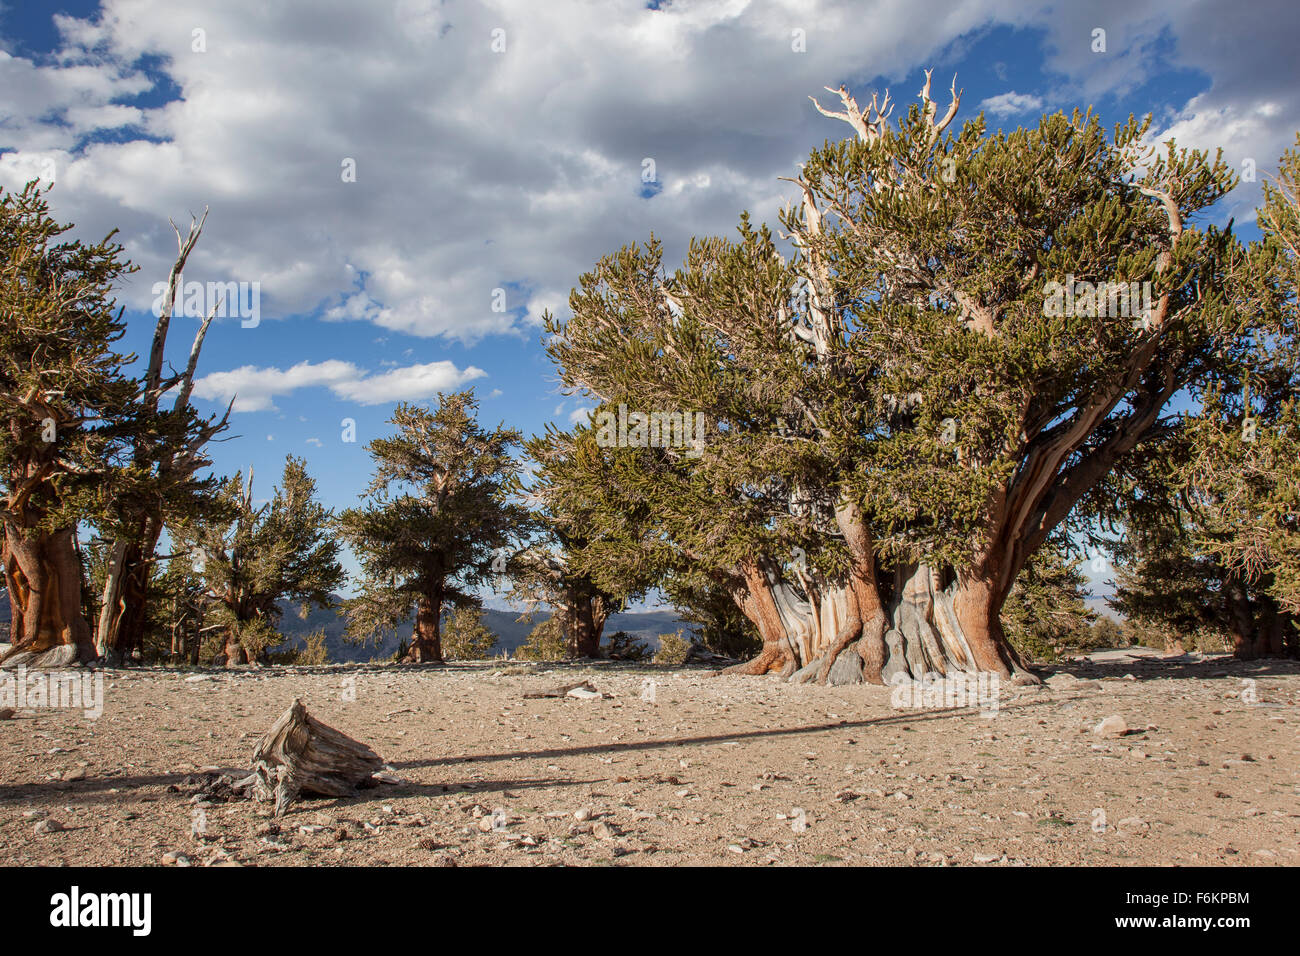 Il Patriarca Tree, il più grande bristlecone pine tree nel mondo. Bristlecone antica foresta di pini, California, Stati Uniti d'America. Foto Stock